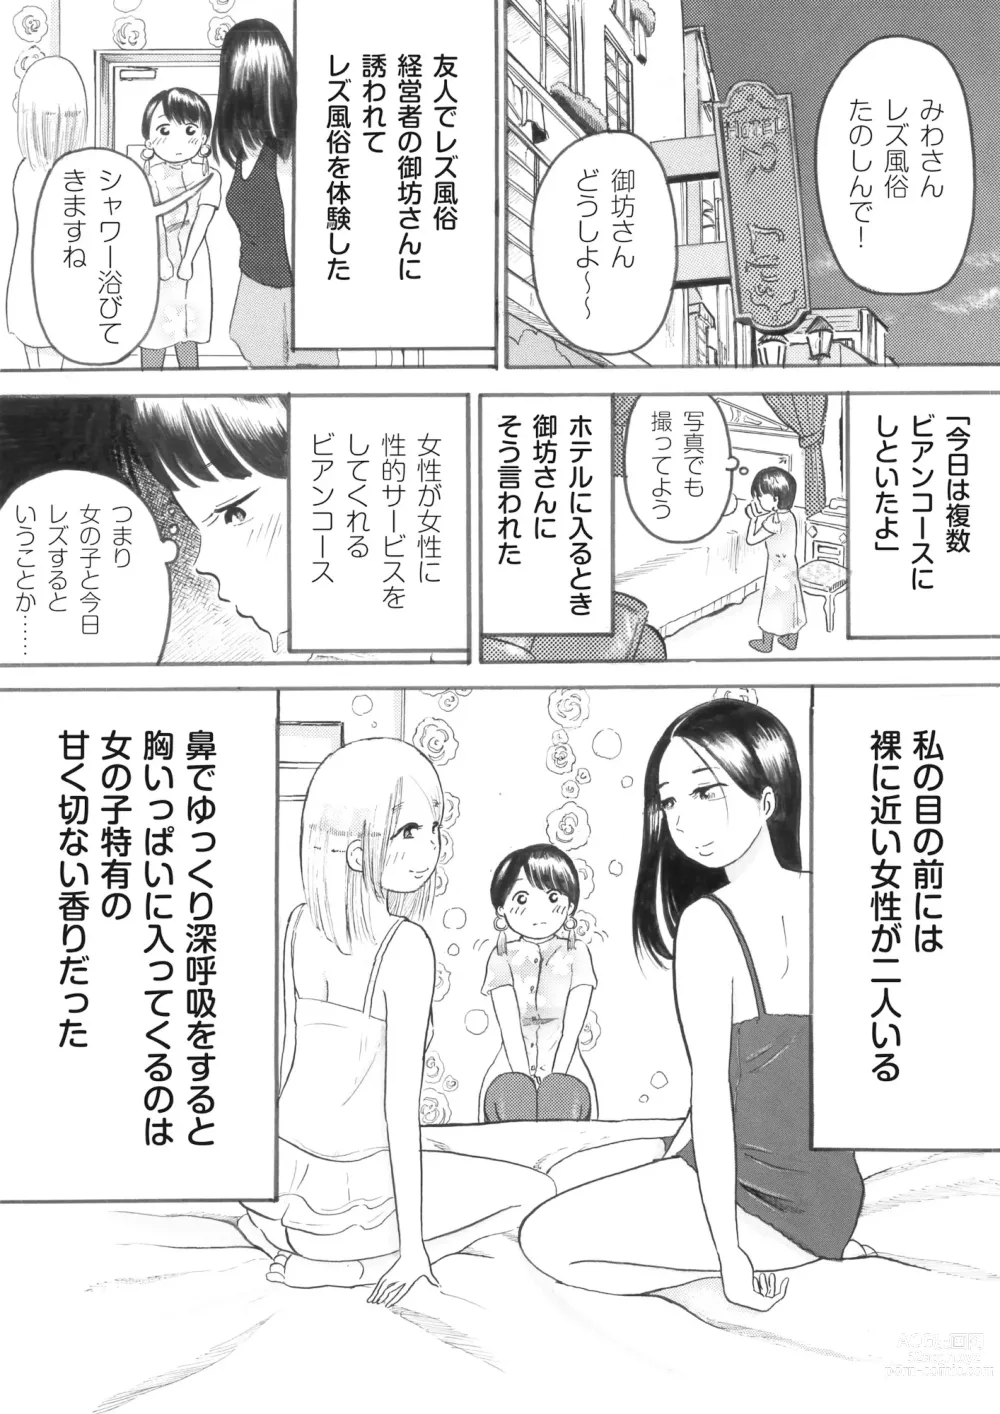 Page 1 of doujinshi Nonke no Watashi ga Wadai no Rezubian Fuuzoku e Ittekita Repouto